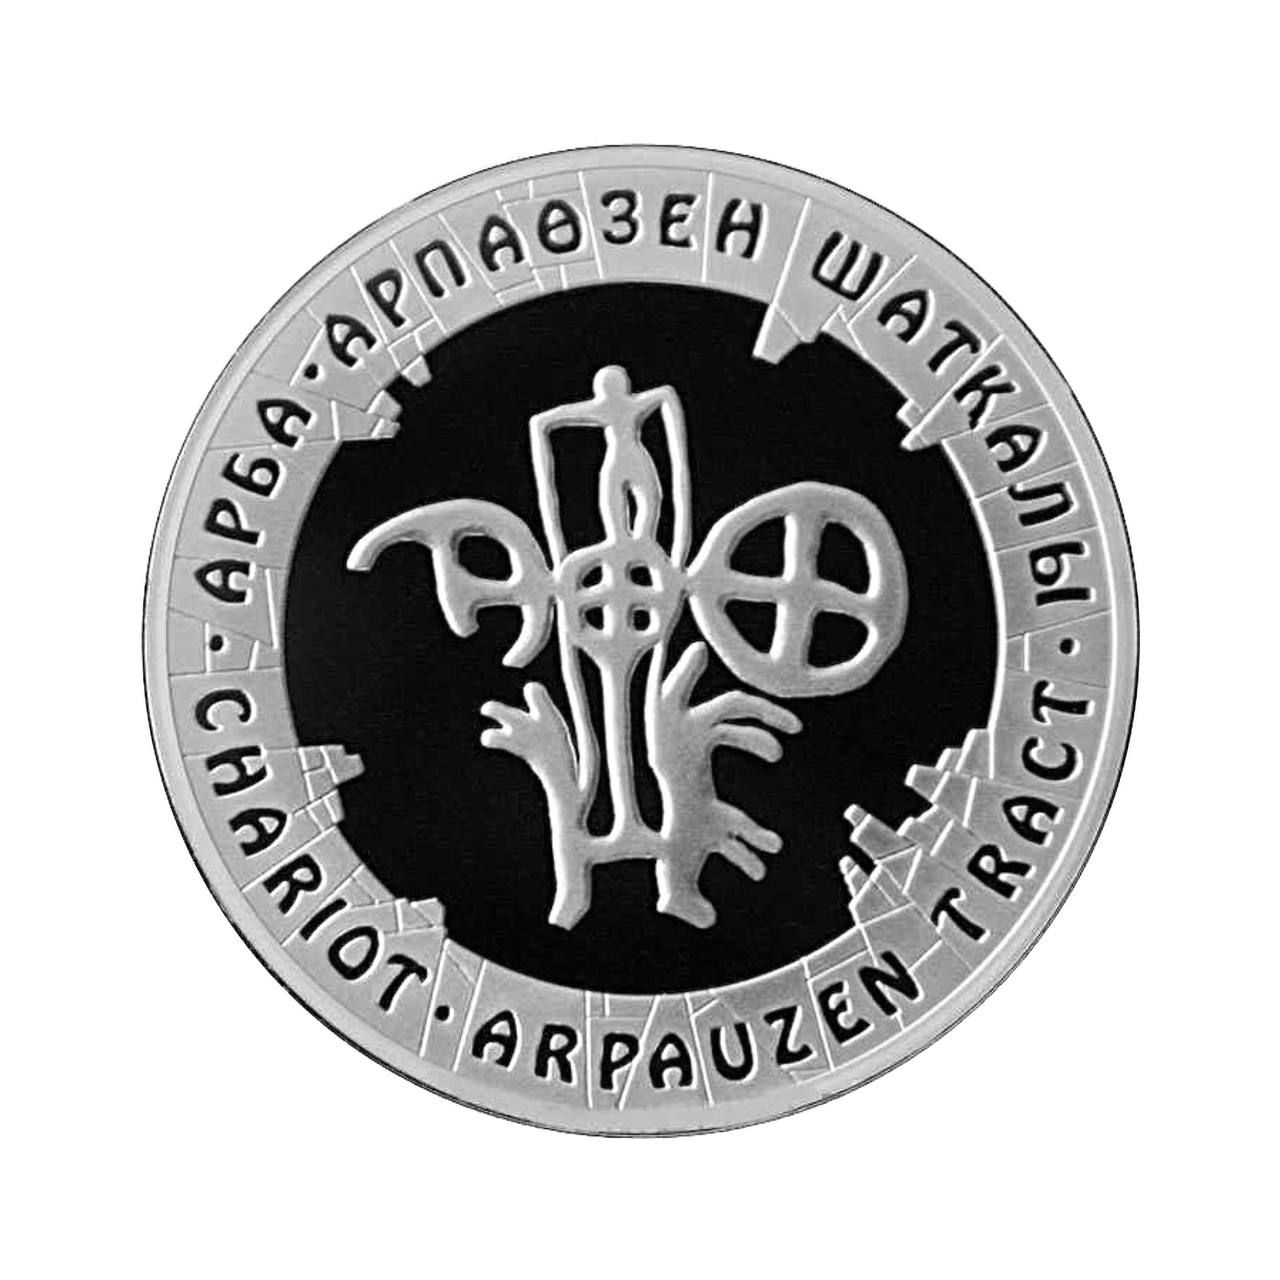 Серебряная монета массой 24 грамма в специальном футляре, номиналом 500 тенге, посвященная Колеснице, Петроглифам и Казахстану, выпущена в 2006 году, качество PF.